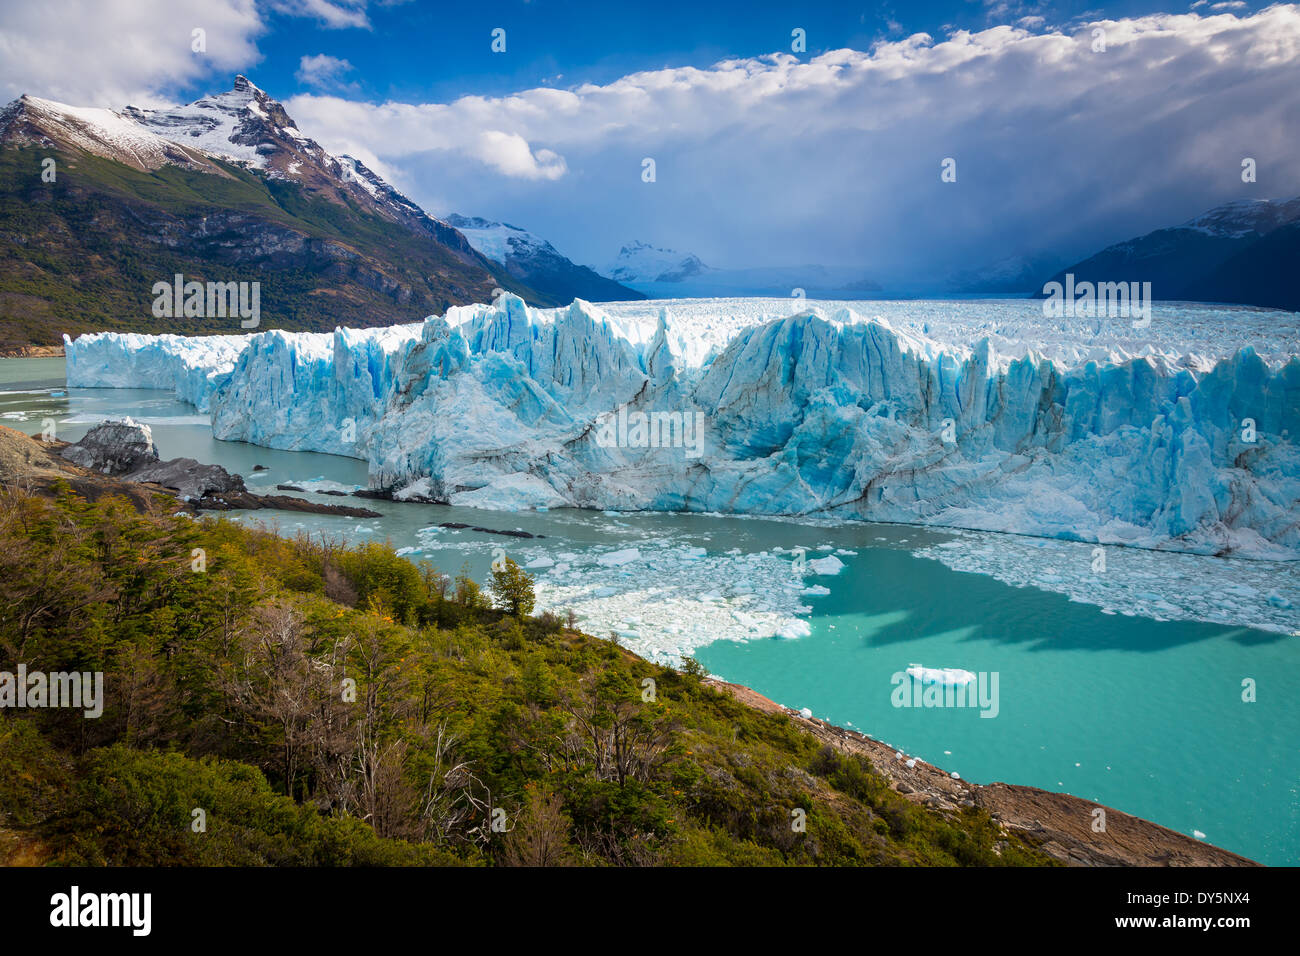 Der Perito-Moreno-Gletscher ist ein Gletscher im Nationalpark Los Glaciares im Südwesten der Provinz Santa Cruz, Argentinien. Stockfoto